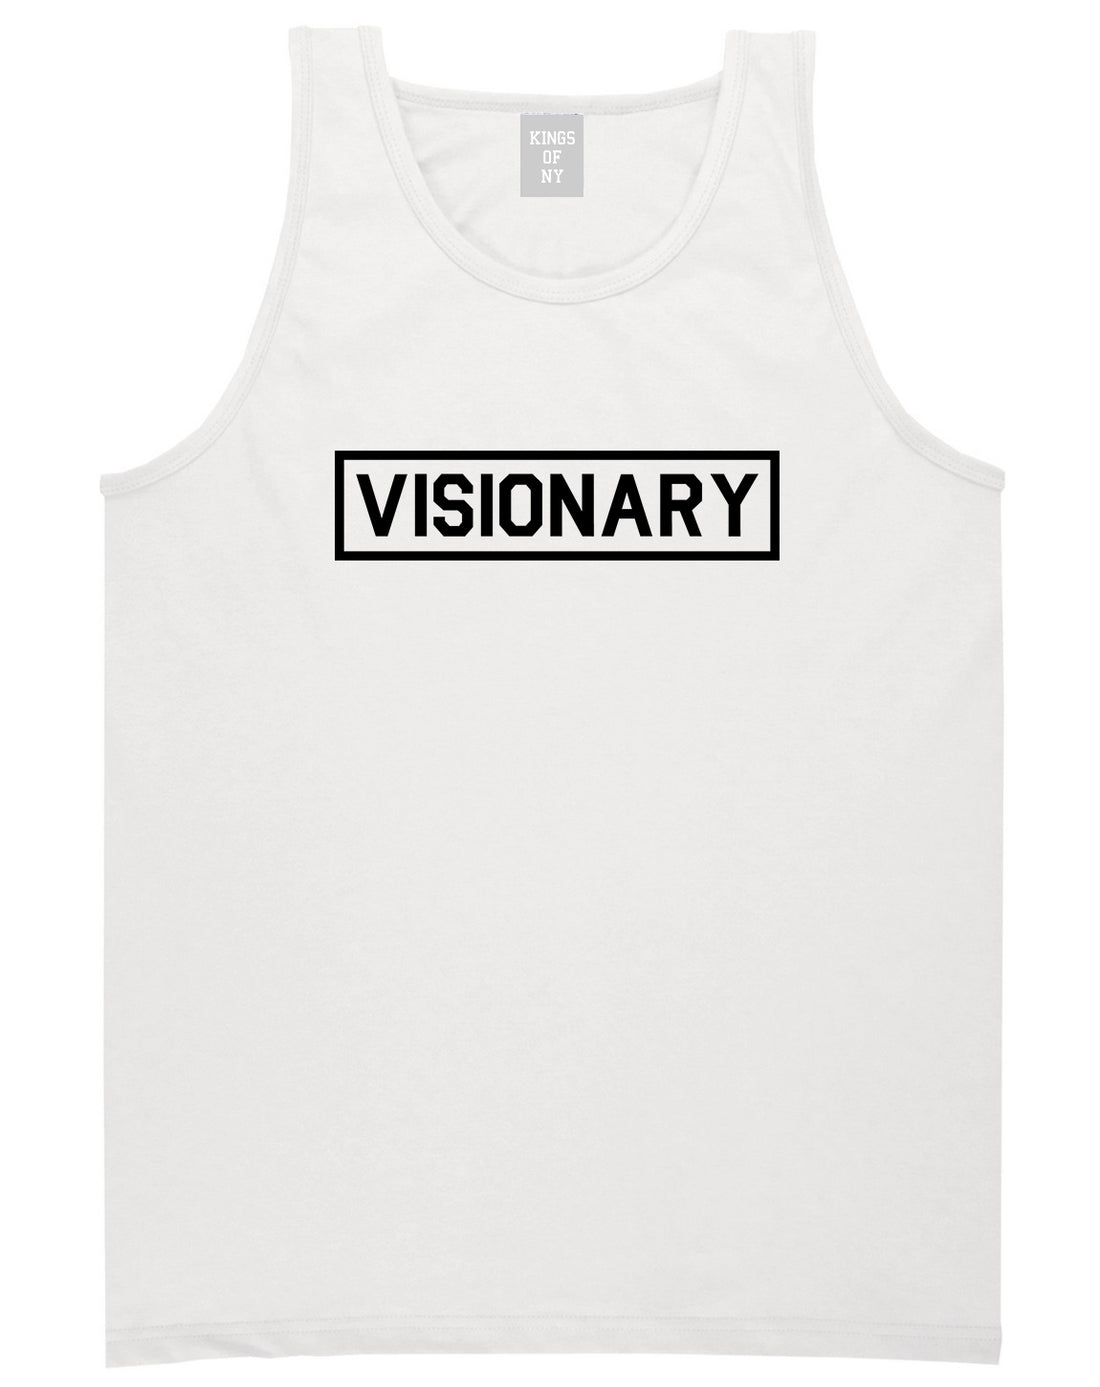 Visionary Box Mens Tank Top Shirt White by Kings Of NY